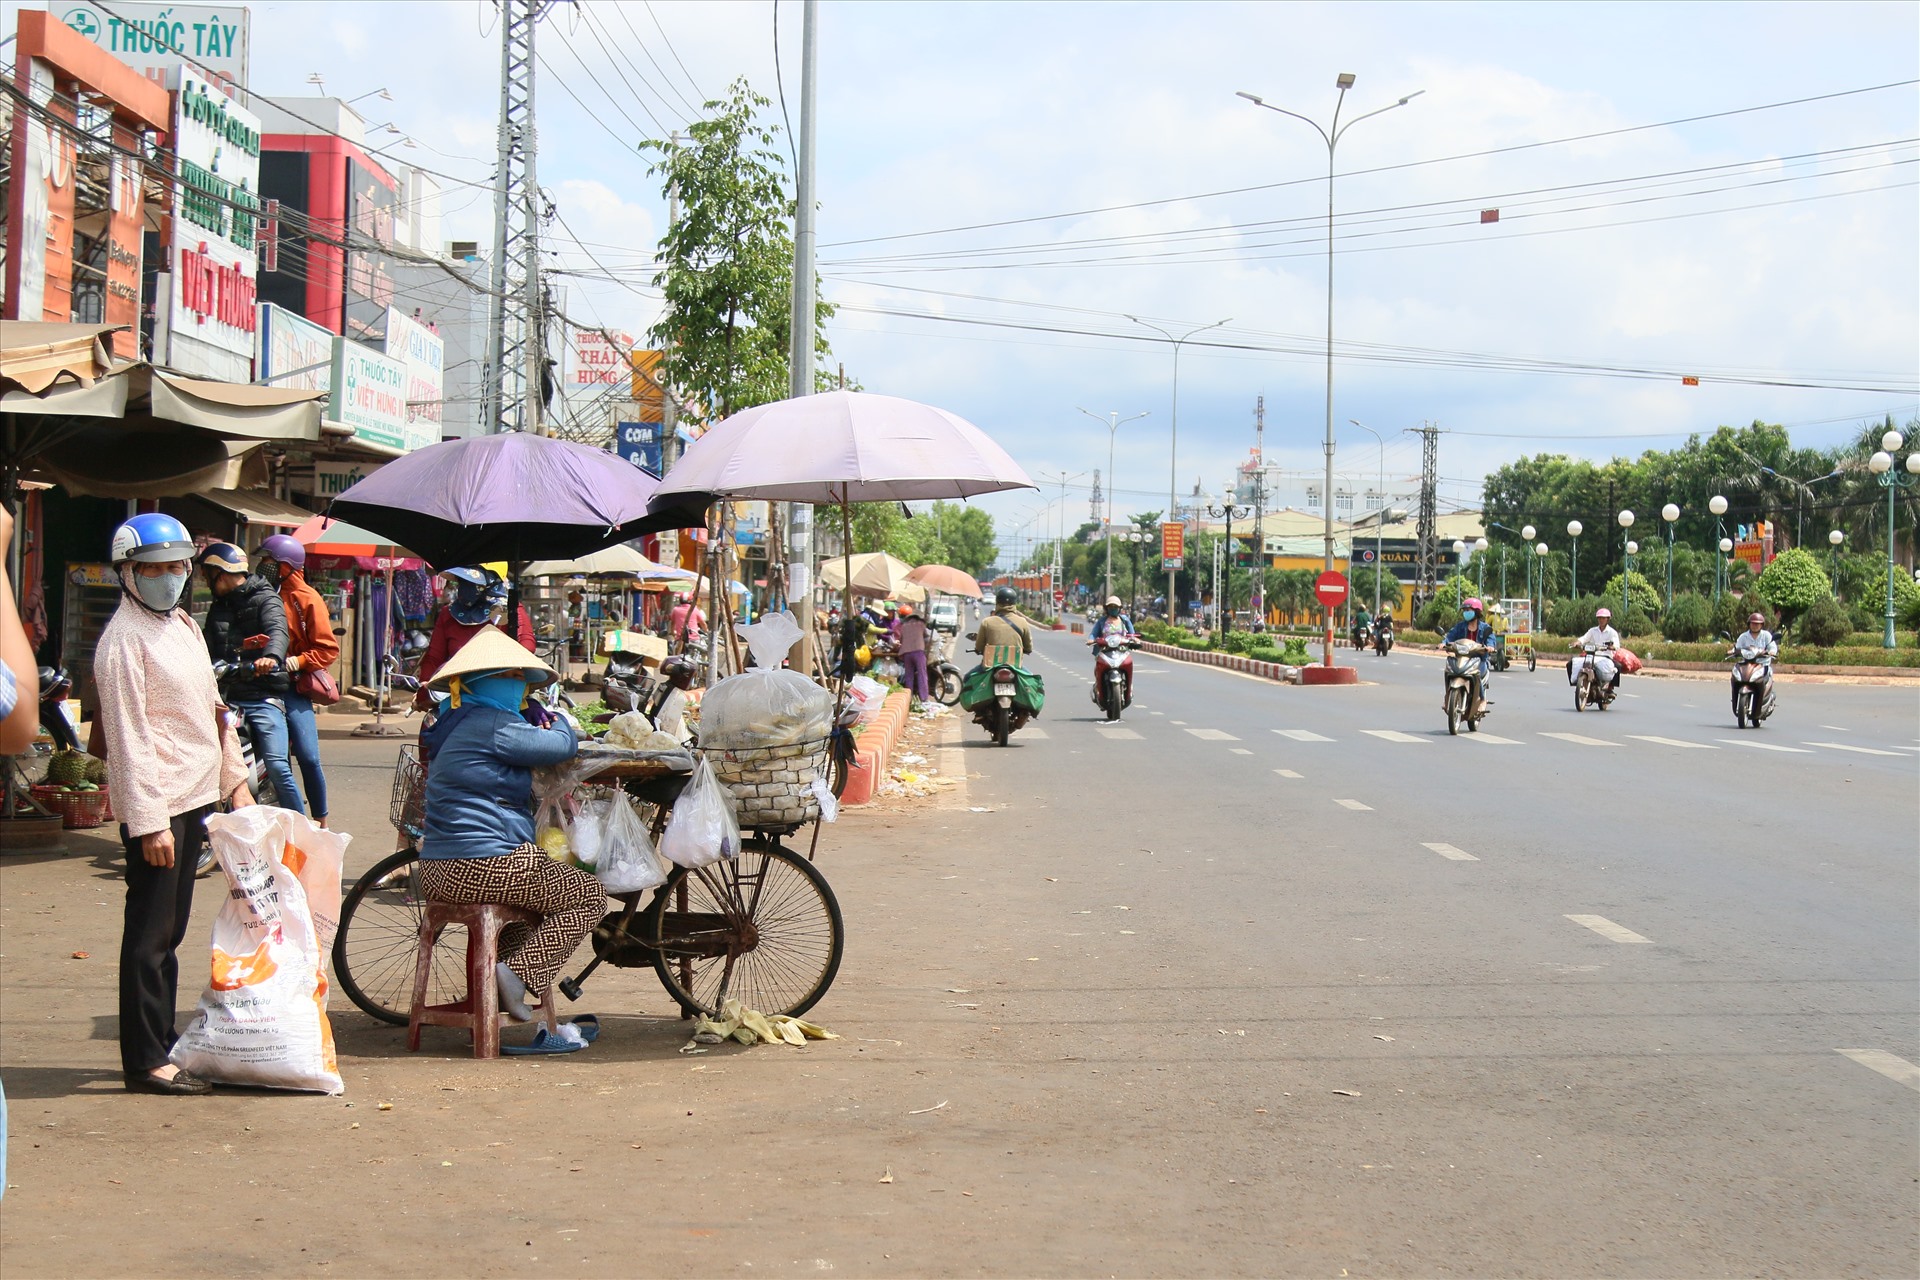 Tại chợ Chư Sê, huyện Chư Sê, Gia Lai, sau vụ tai nạn kinh hoàng, chính quyền địa phương đã xây các barie, rào chắn ngăn cách chợ với lề đường Quốc lộ